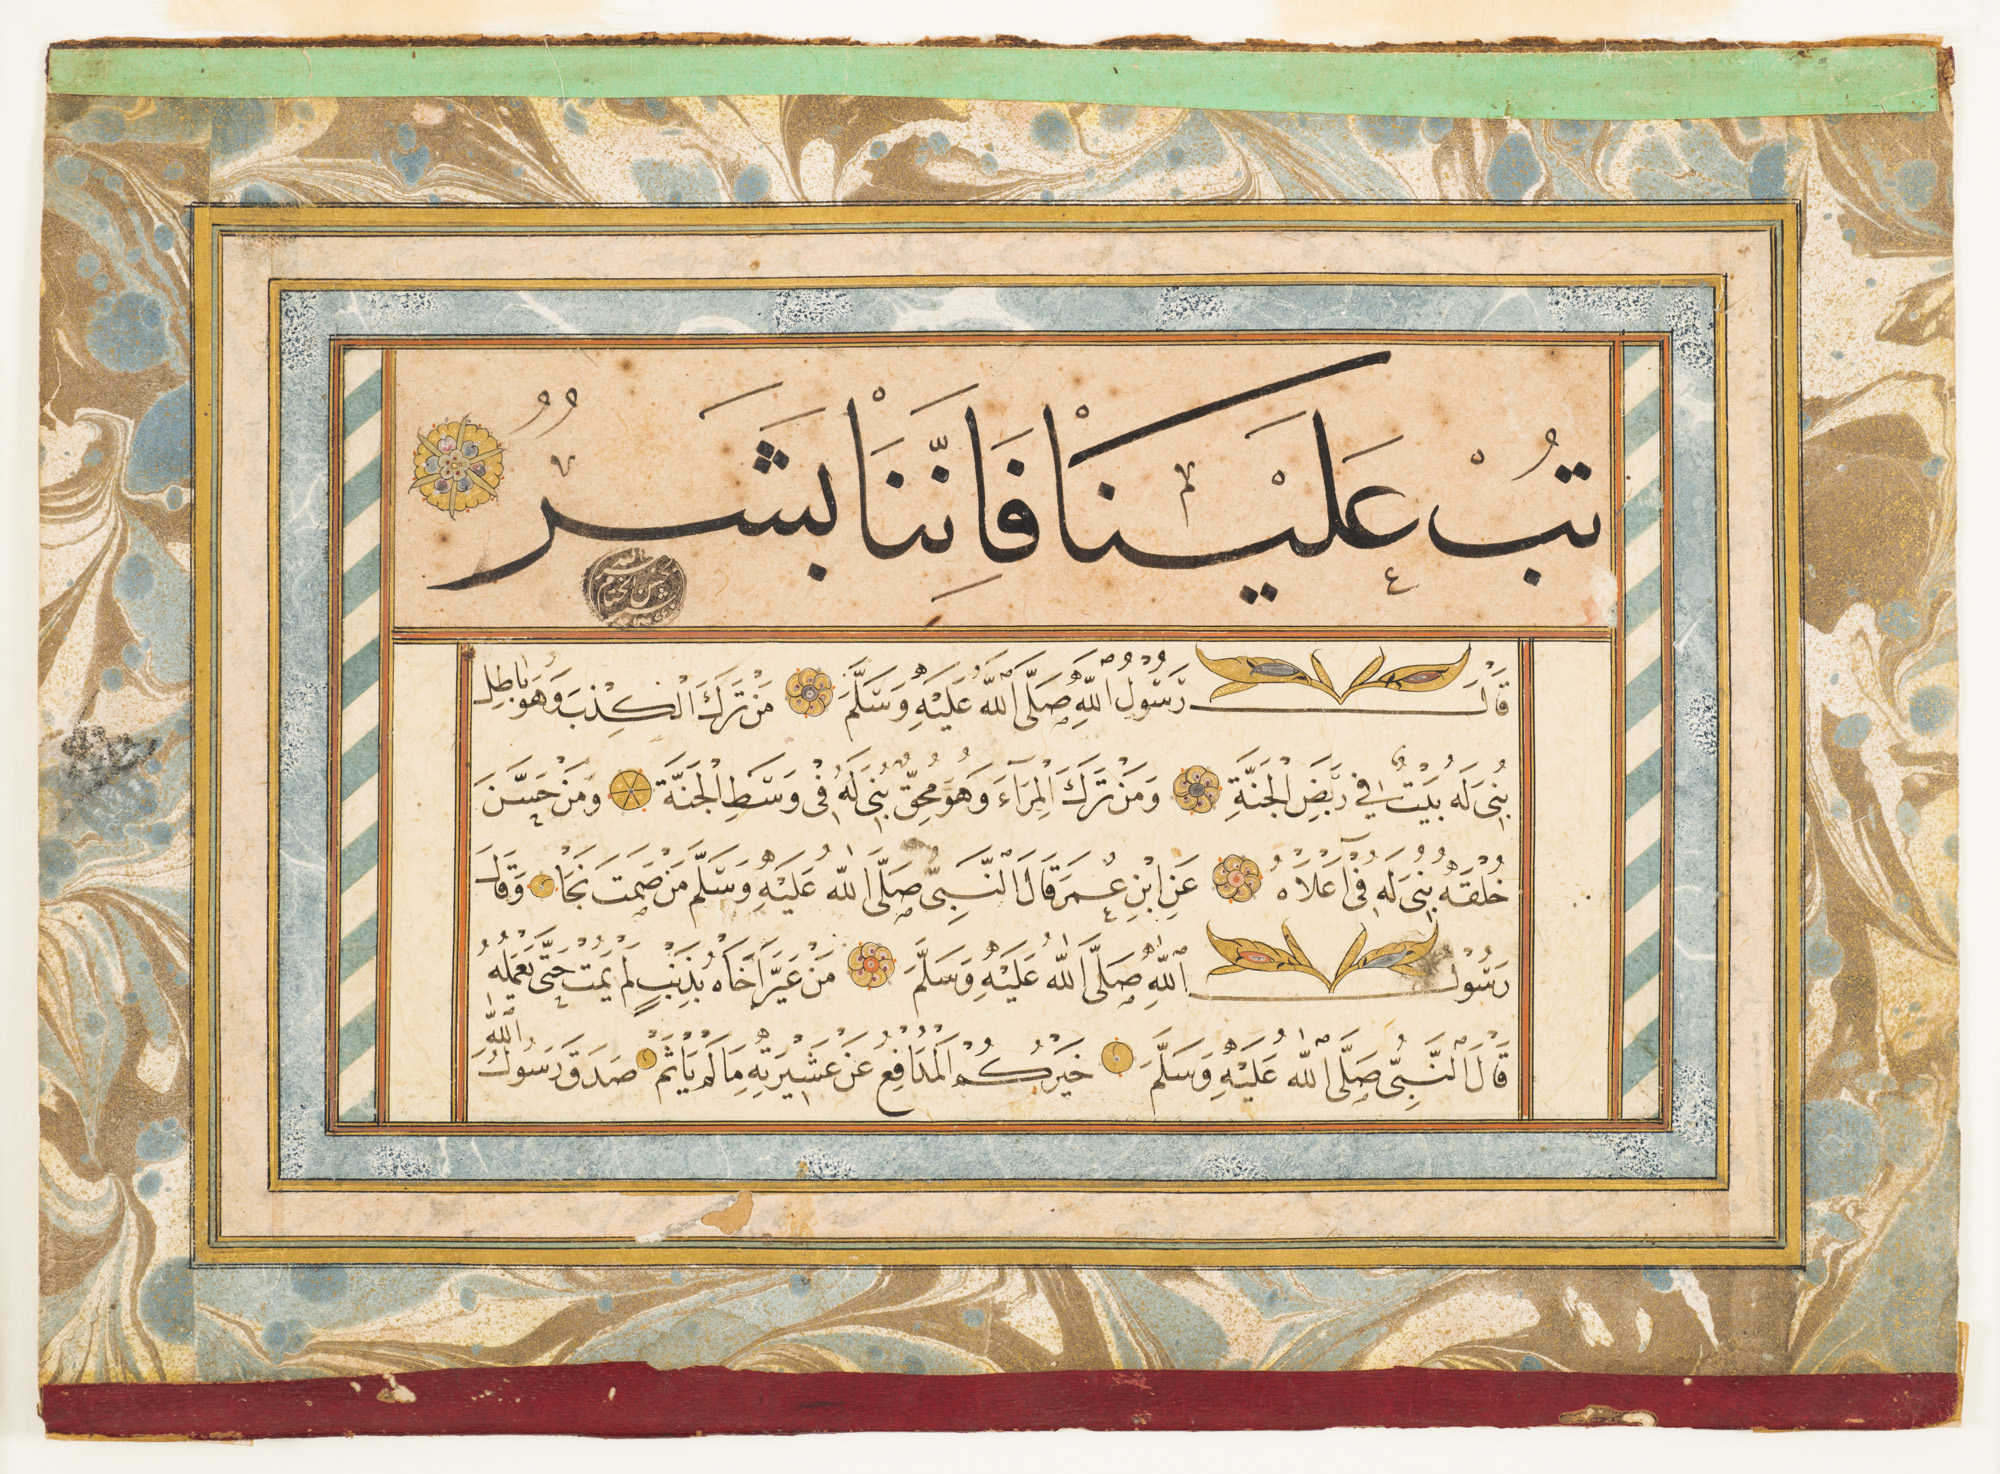 Eine kaligrafische Sammlung der Worte und Taten des Propheten Mohamed by Unbekannter Künstler - 18. Jahrhundert Cincinnati Art Museum